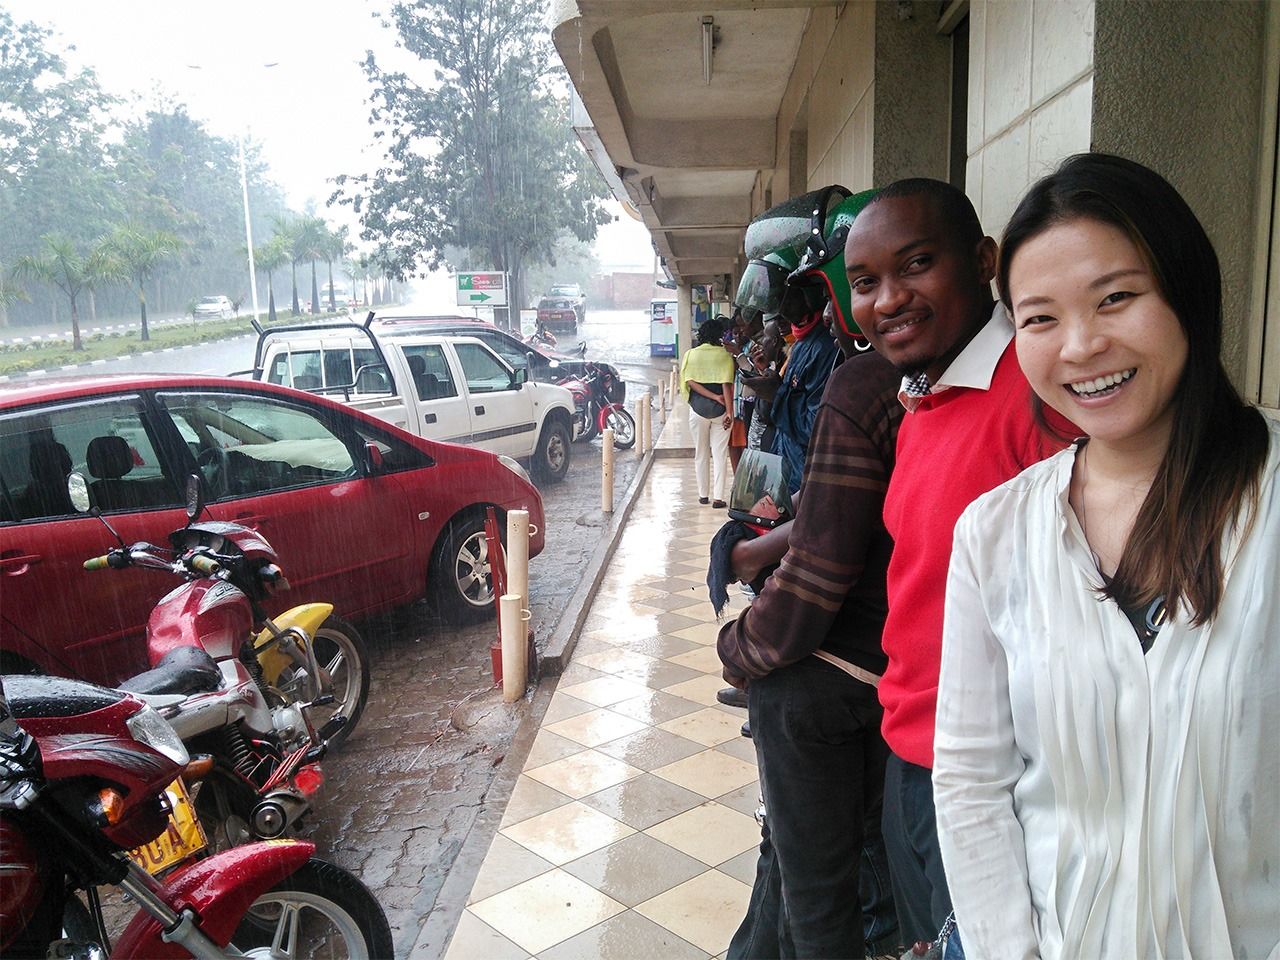 سائقو الدراجات النارية يحتمون من المطر” التقطت هذه الصورة قبل تفشي الوباء.